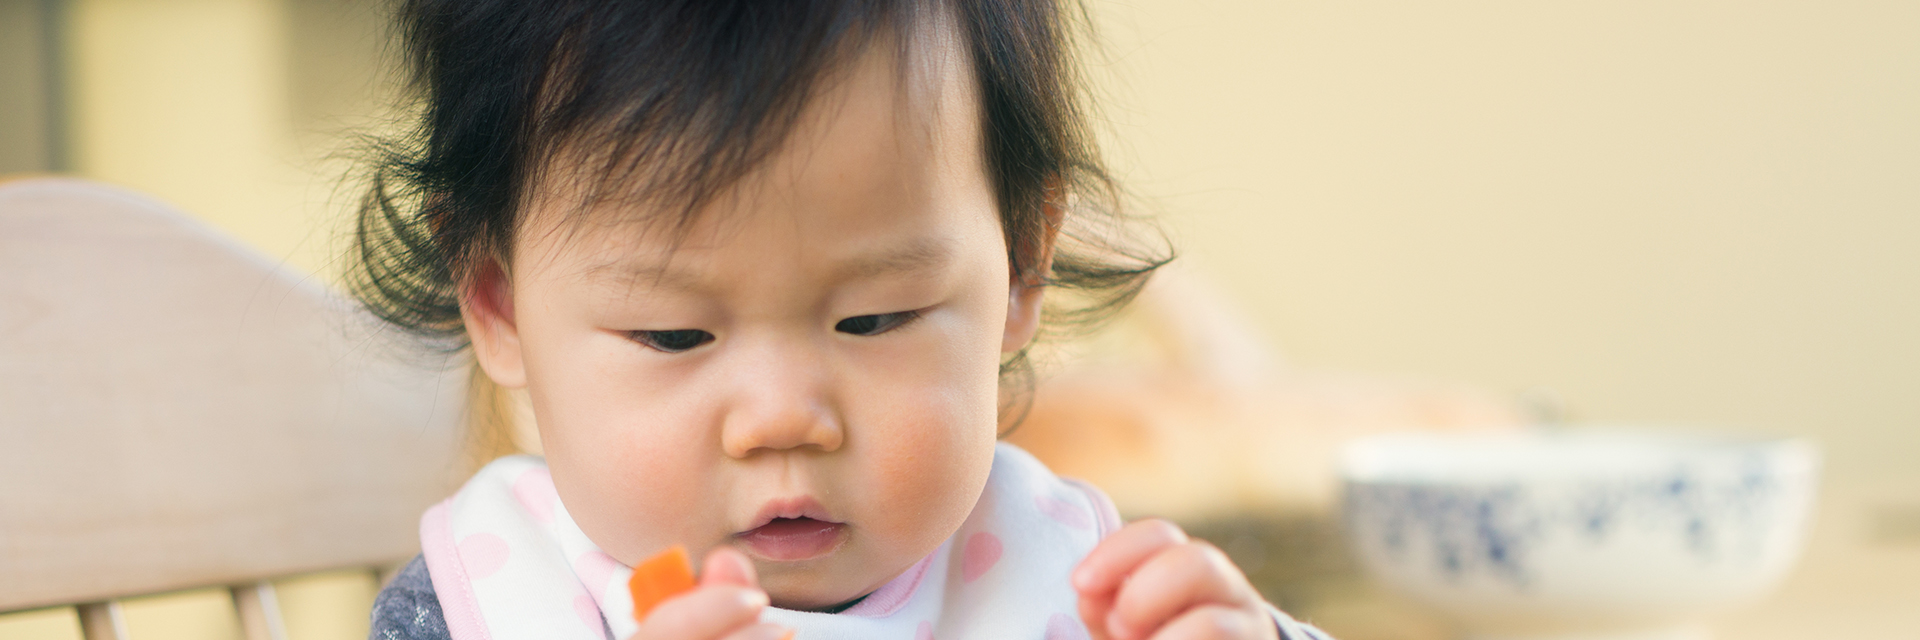 Infant eating carrot